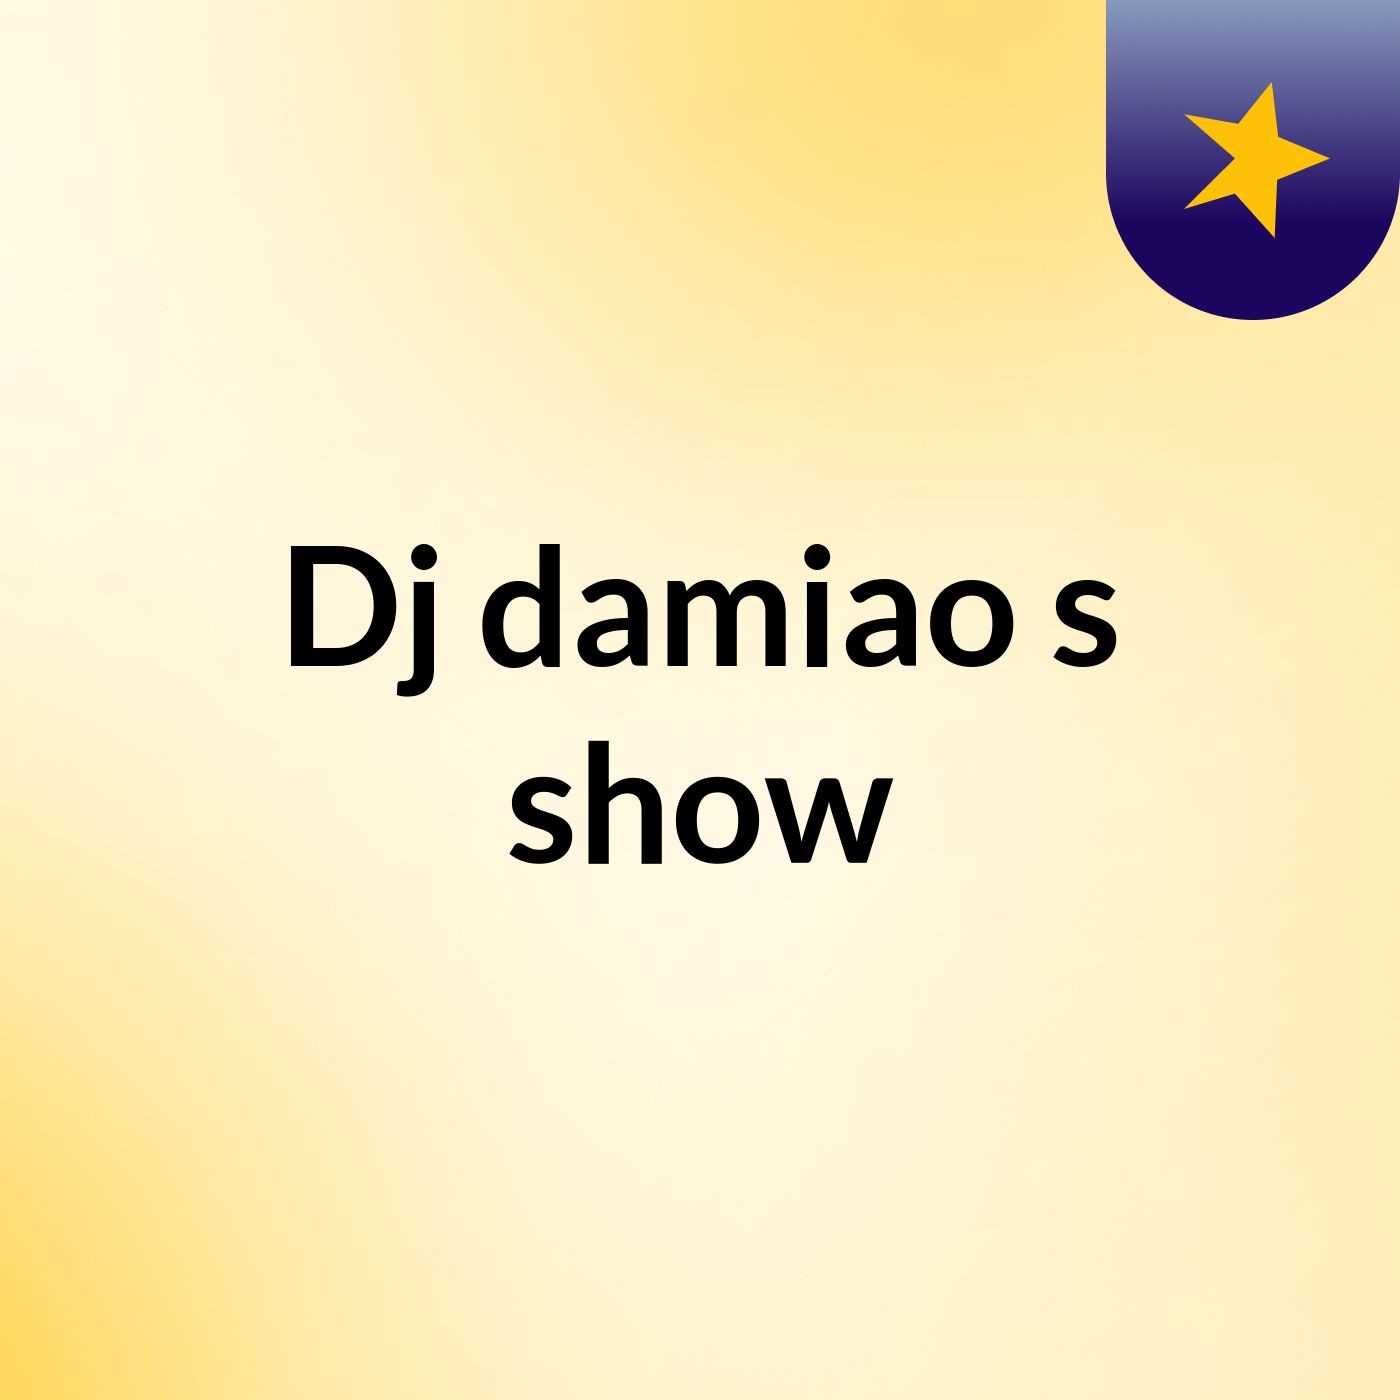 Dj damiao's show